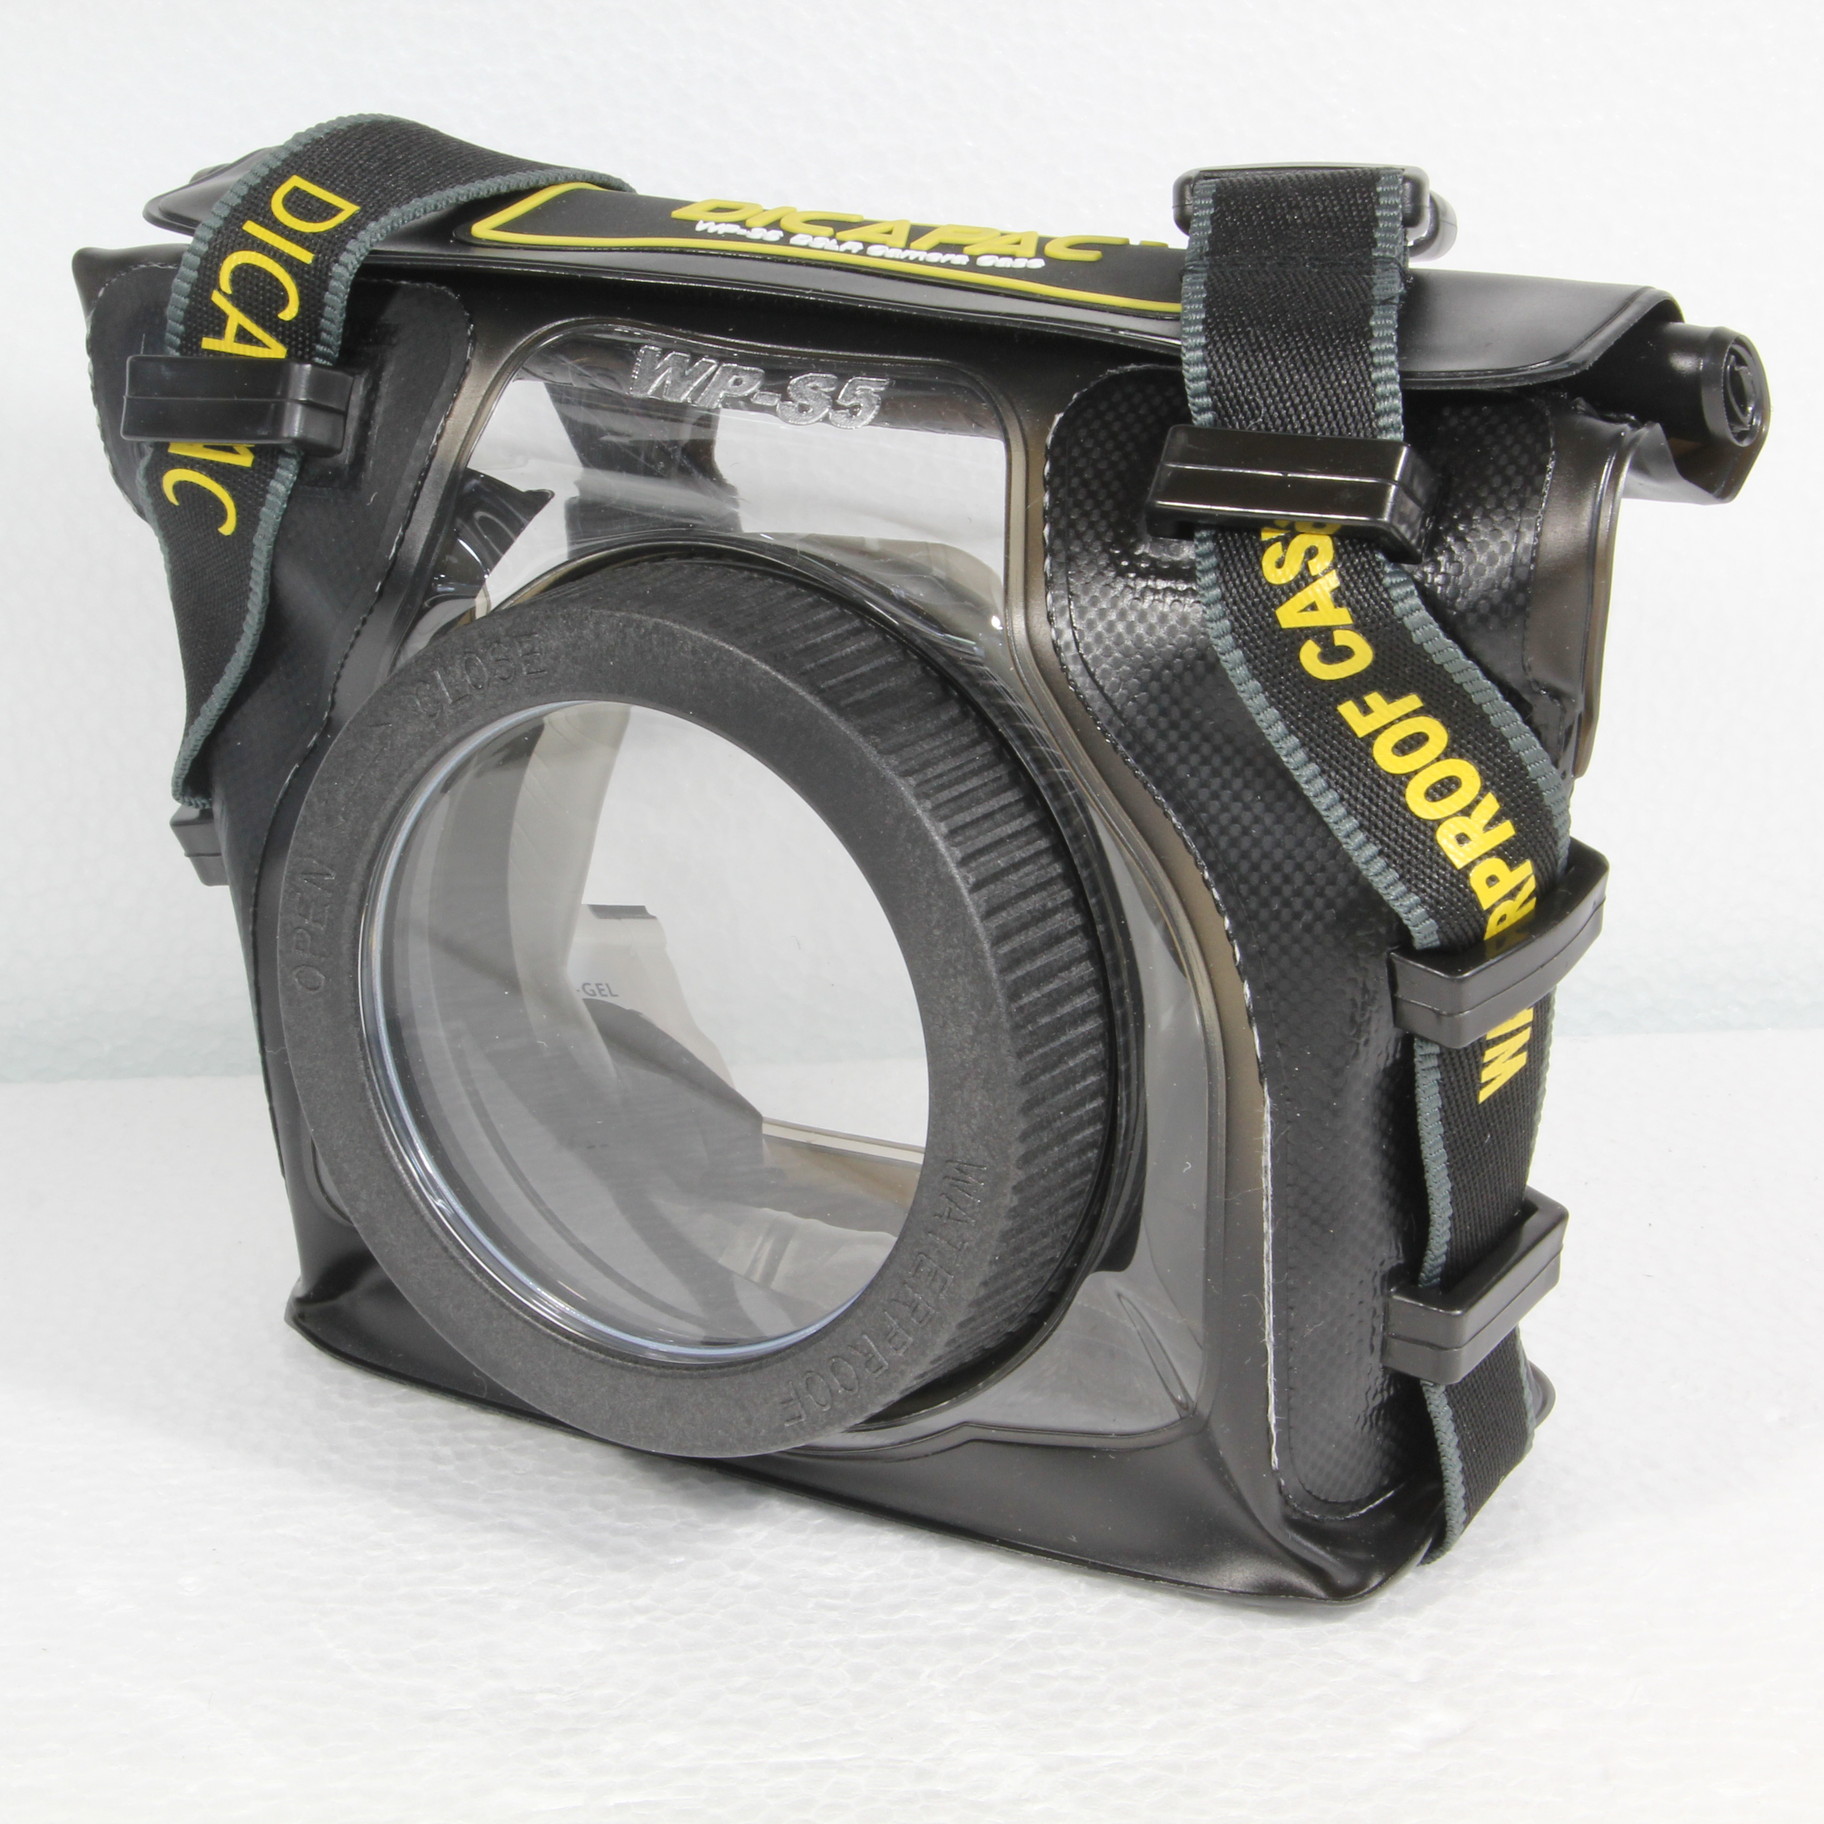 中古 Wp S5 コンパクト一眼カメラ用 防水ケース 2133028833294 リコレ ソフマップの中古通販サイト